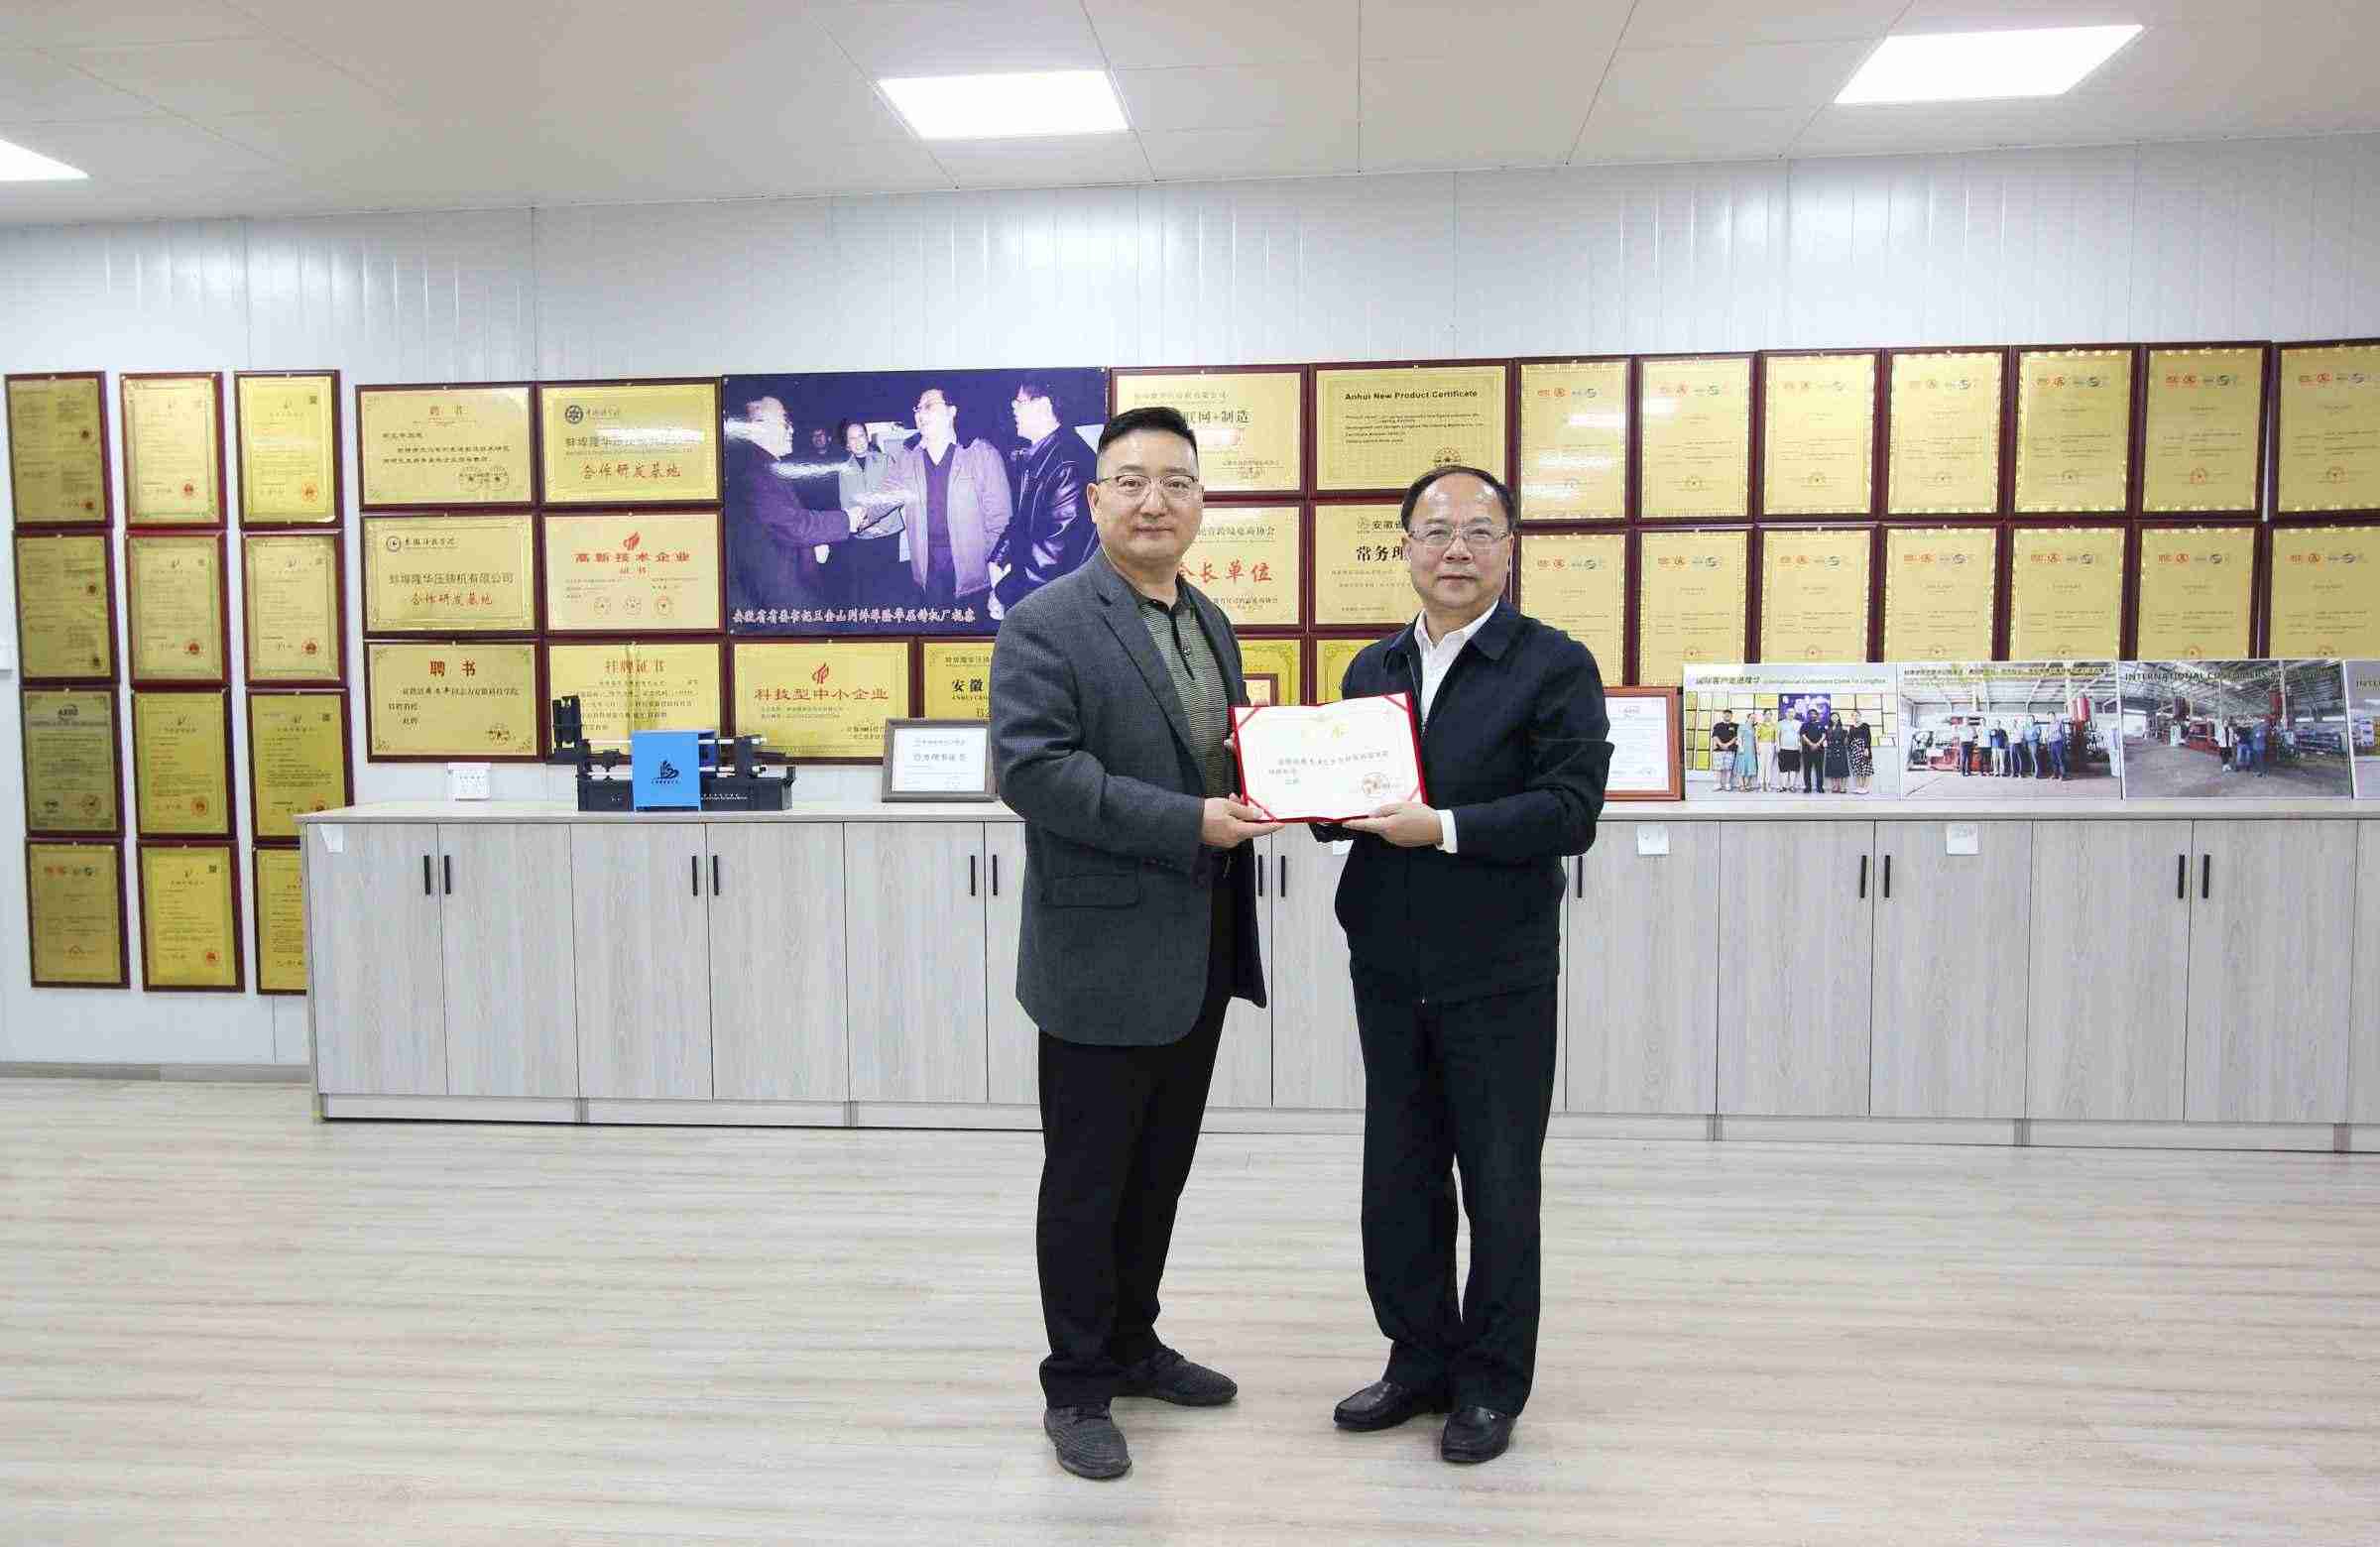 O Bengbu College recebeu o certificado de honra de Bengbu Longhua Zhou Wenping 